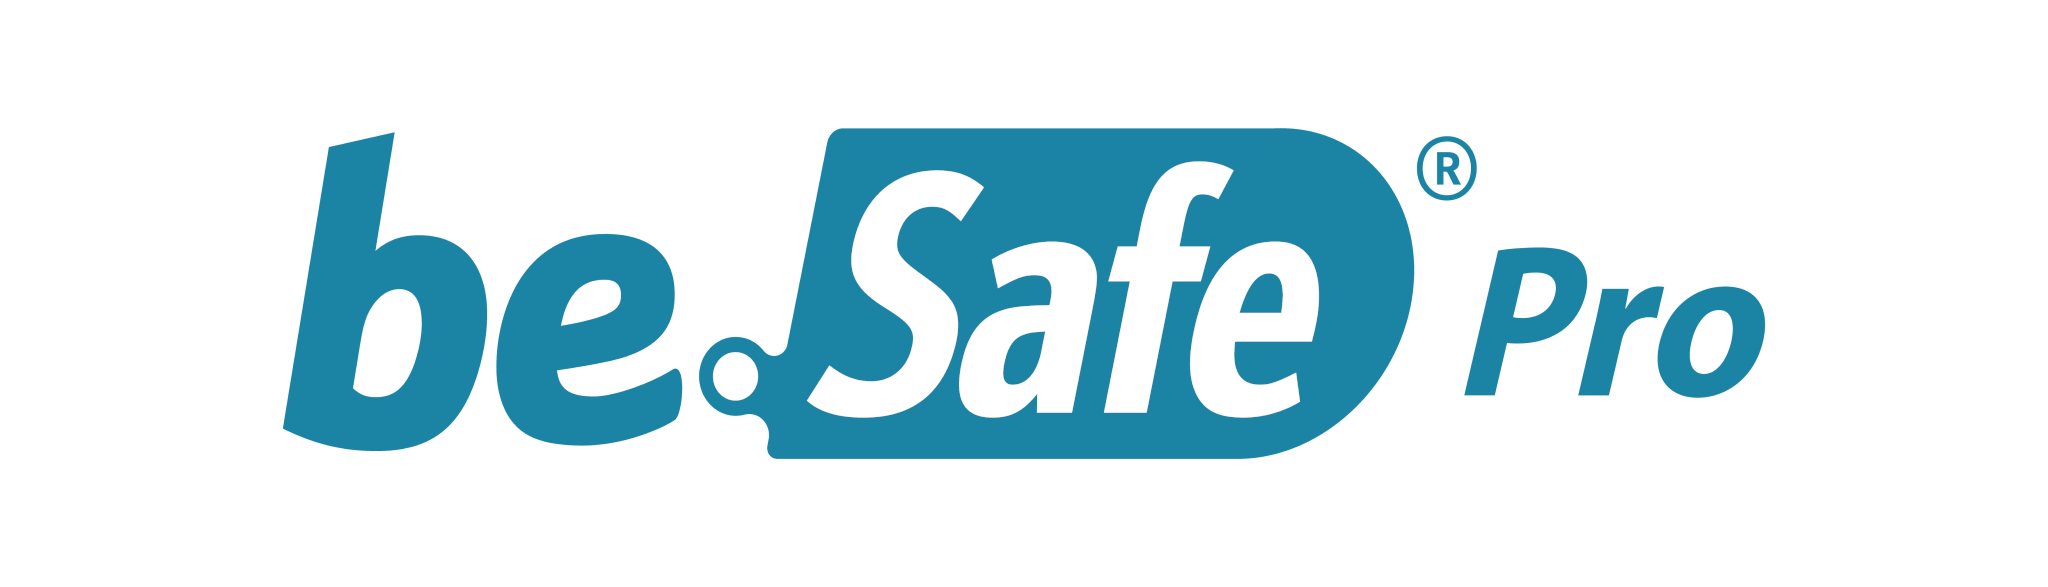 be.safe pro logo